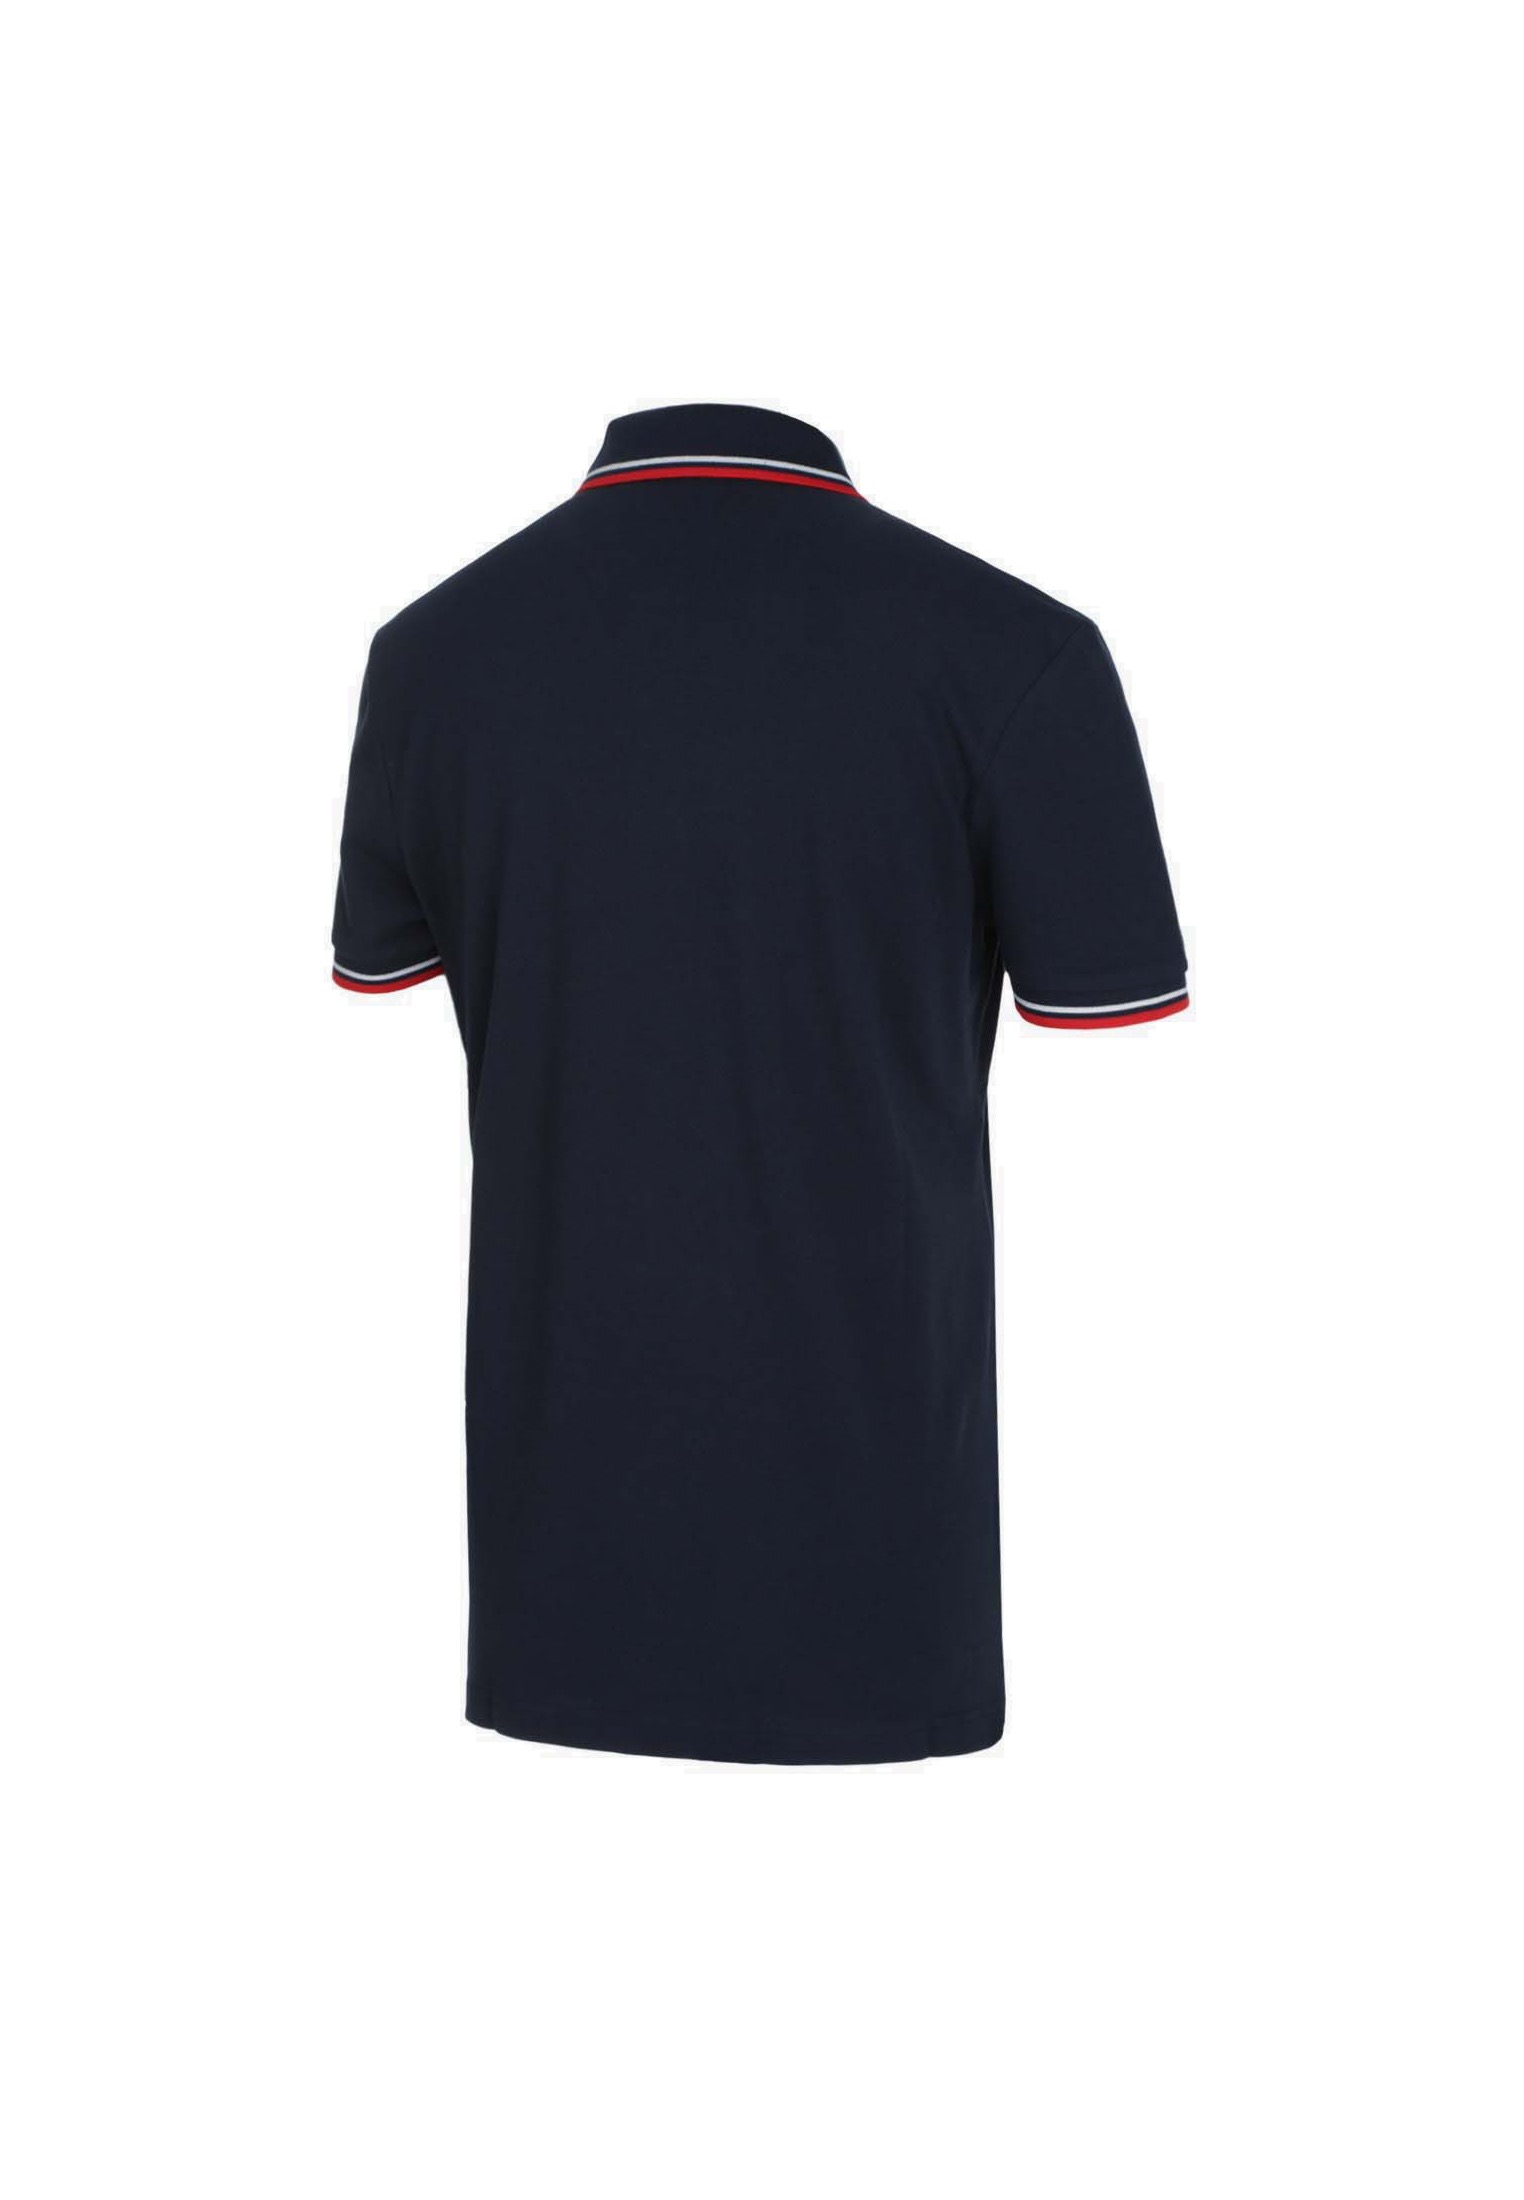 Diadora - Polo Shirt POLO PQ for man | eBay